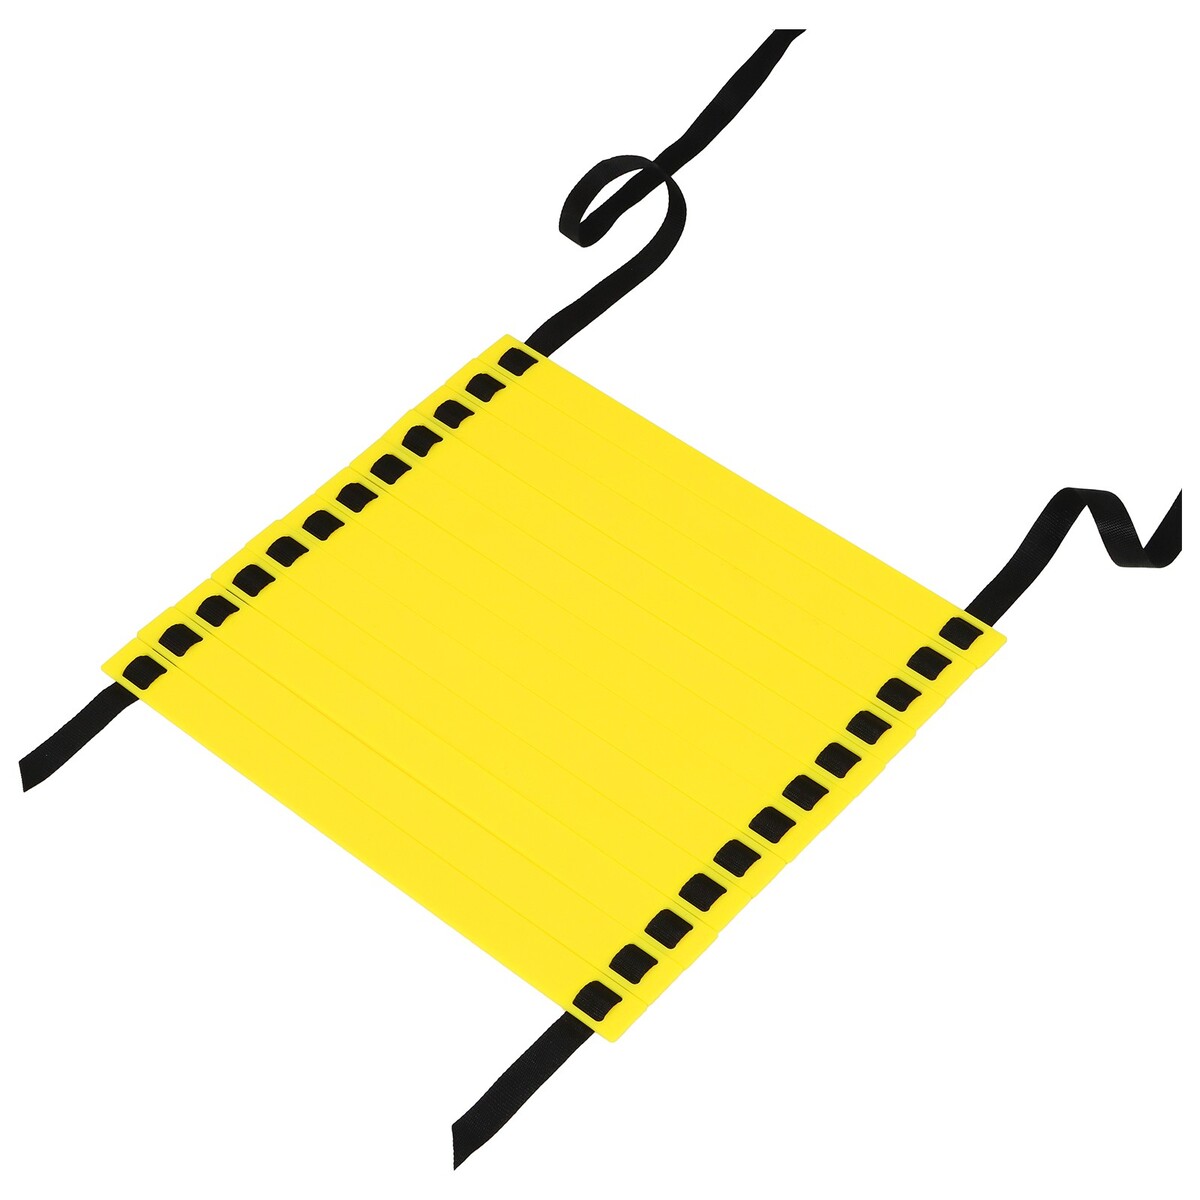 Координационная лестница onlytop, 6 м, толщина 2 мм, цвет желтый лестница сибин 38833 12 трехсекционная со стабилизатором 12 ступеней